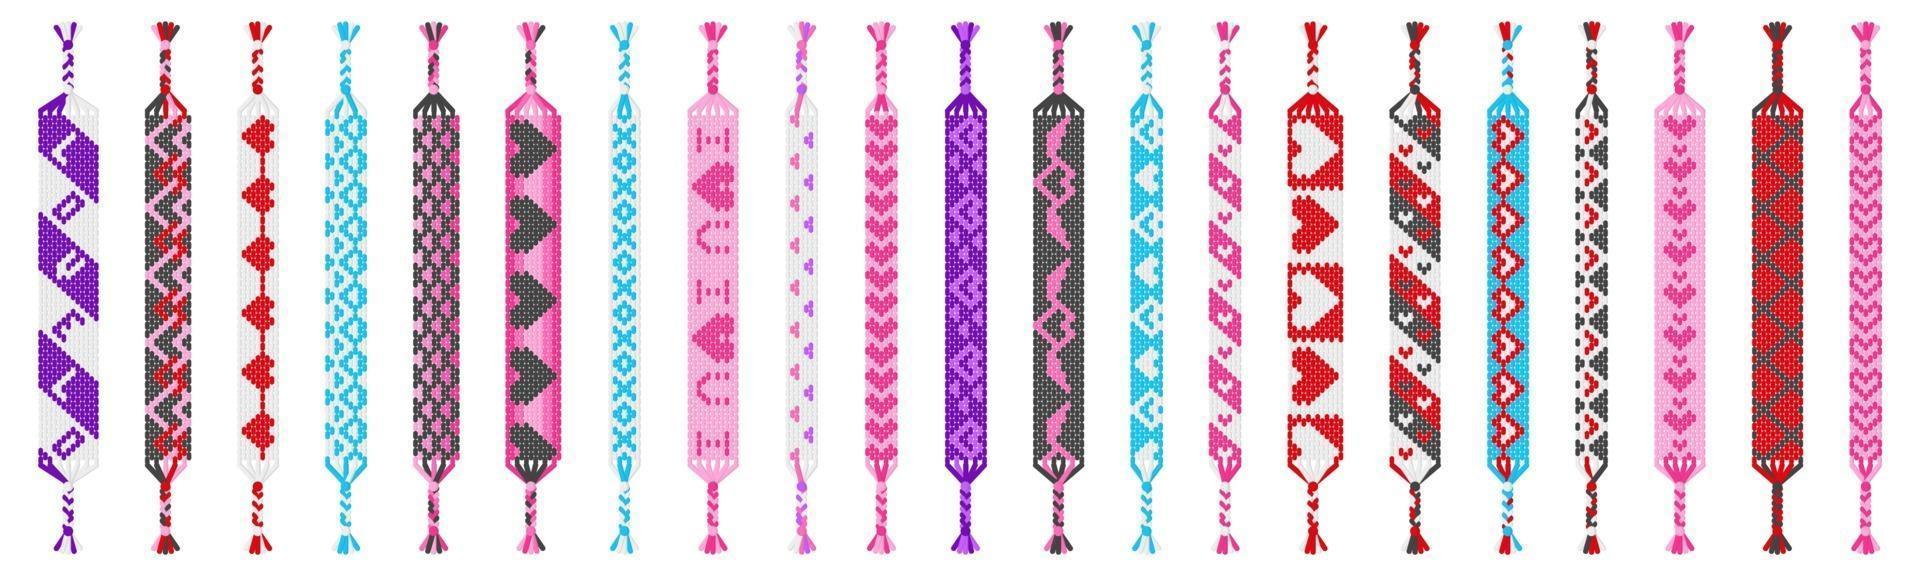 vector set gekleurde handgemaakte hippie vriendschap armbanden van draden geïsoleerd op een witte achtergrond. Valentijnsdag